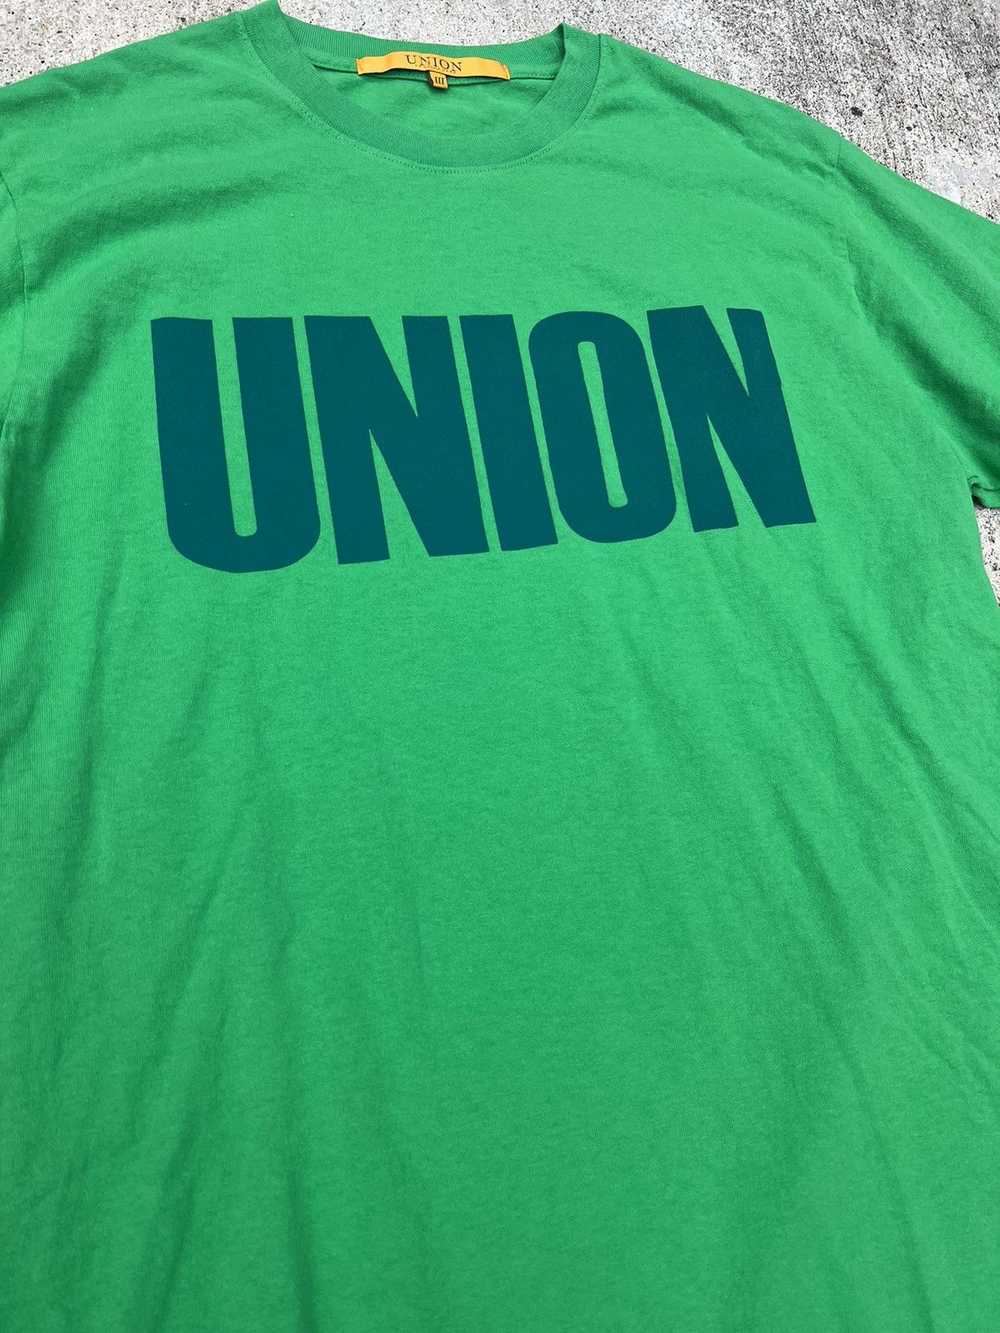 Streetwear × Union × Union La Union LA Logo Tee - image 2